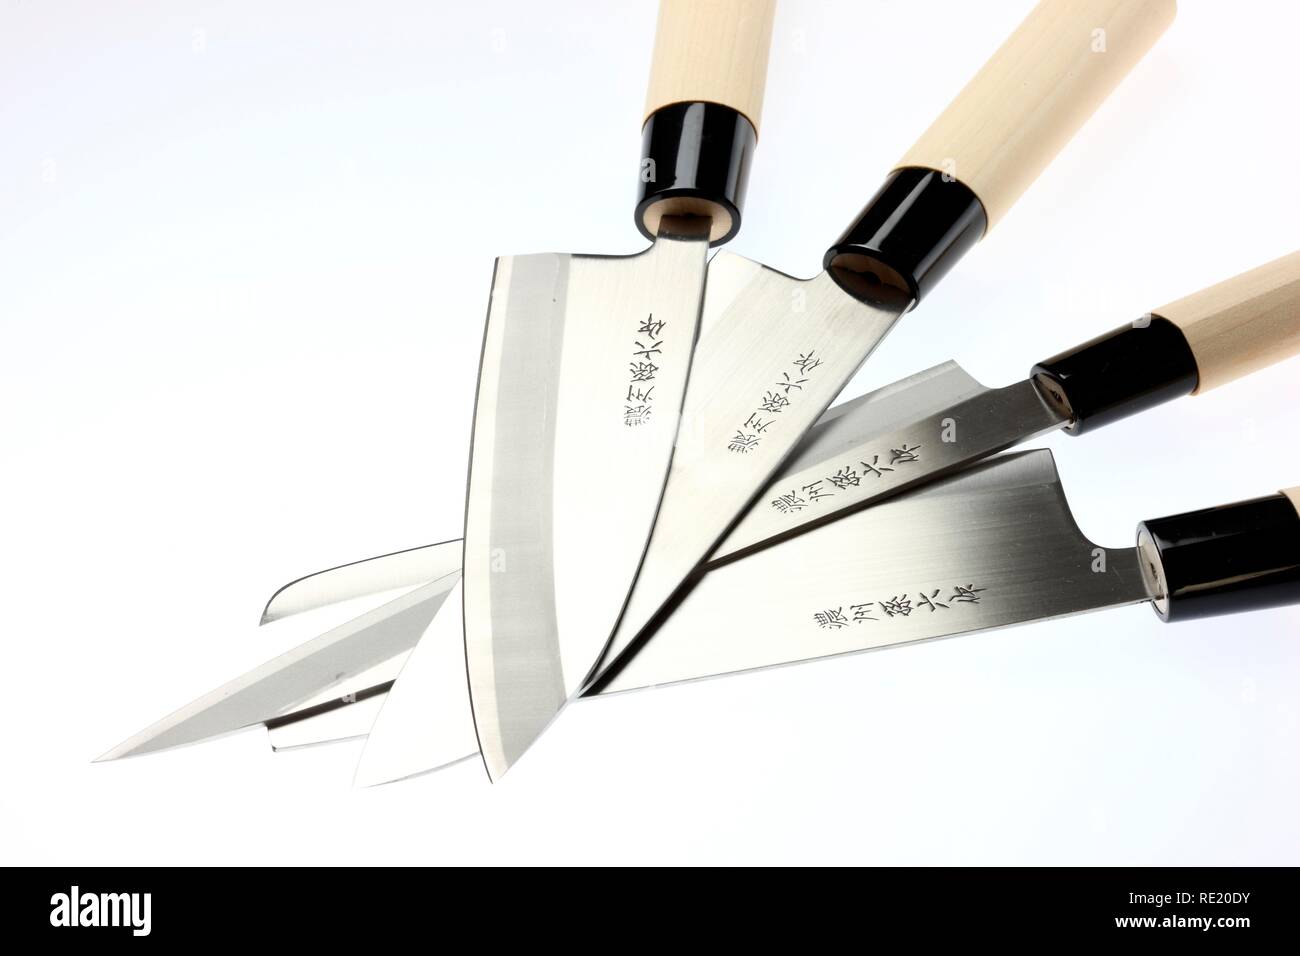 Le chef japonais couteaux, couteau à viande, couteau à poisson, cleaver, fileter couteau, couteau de cuisine, gravée de caractères, poignée en bois Banque D'Images